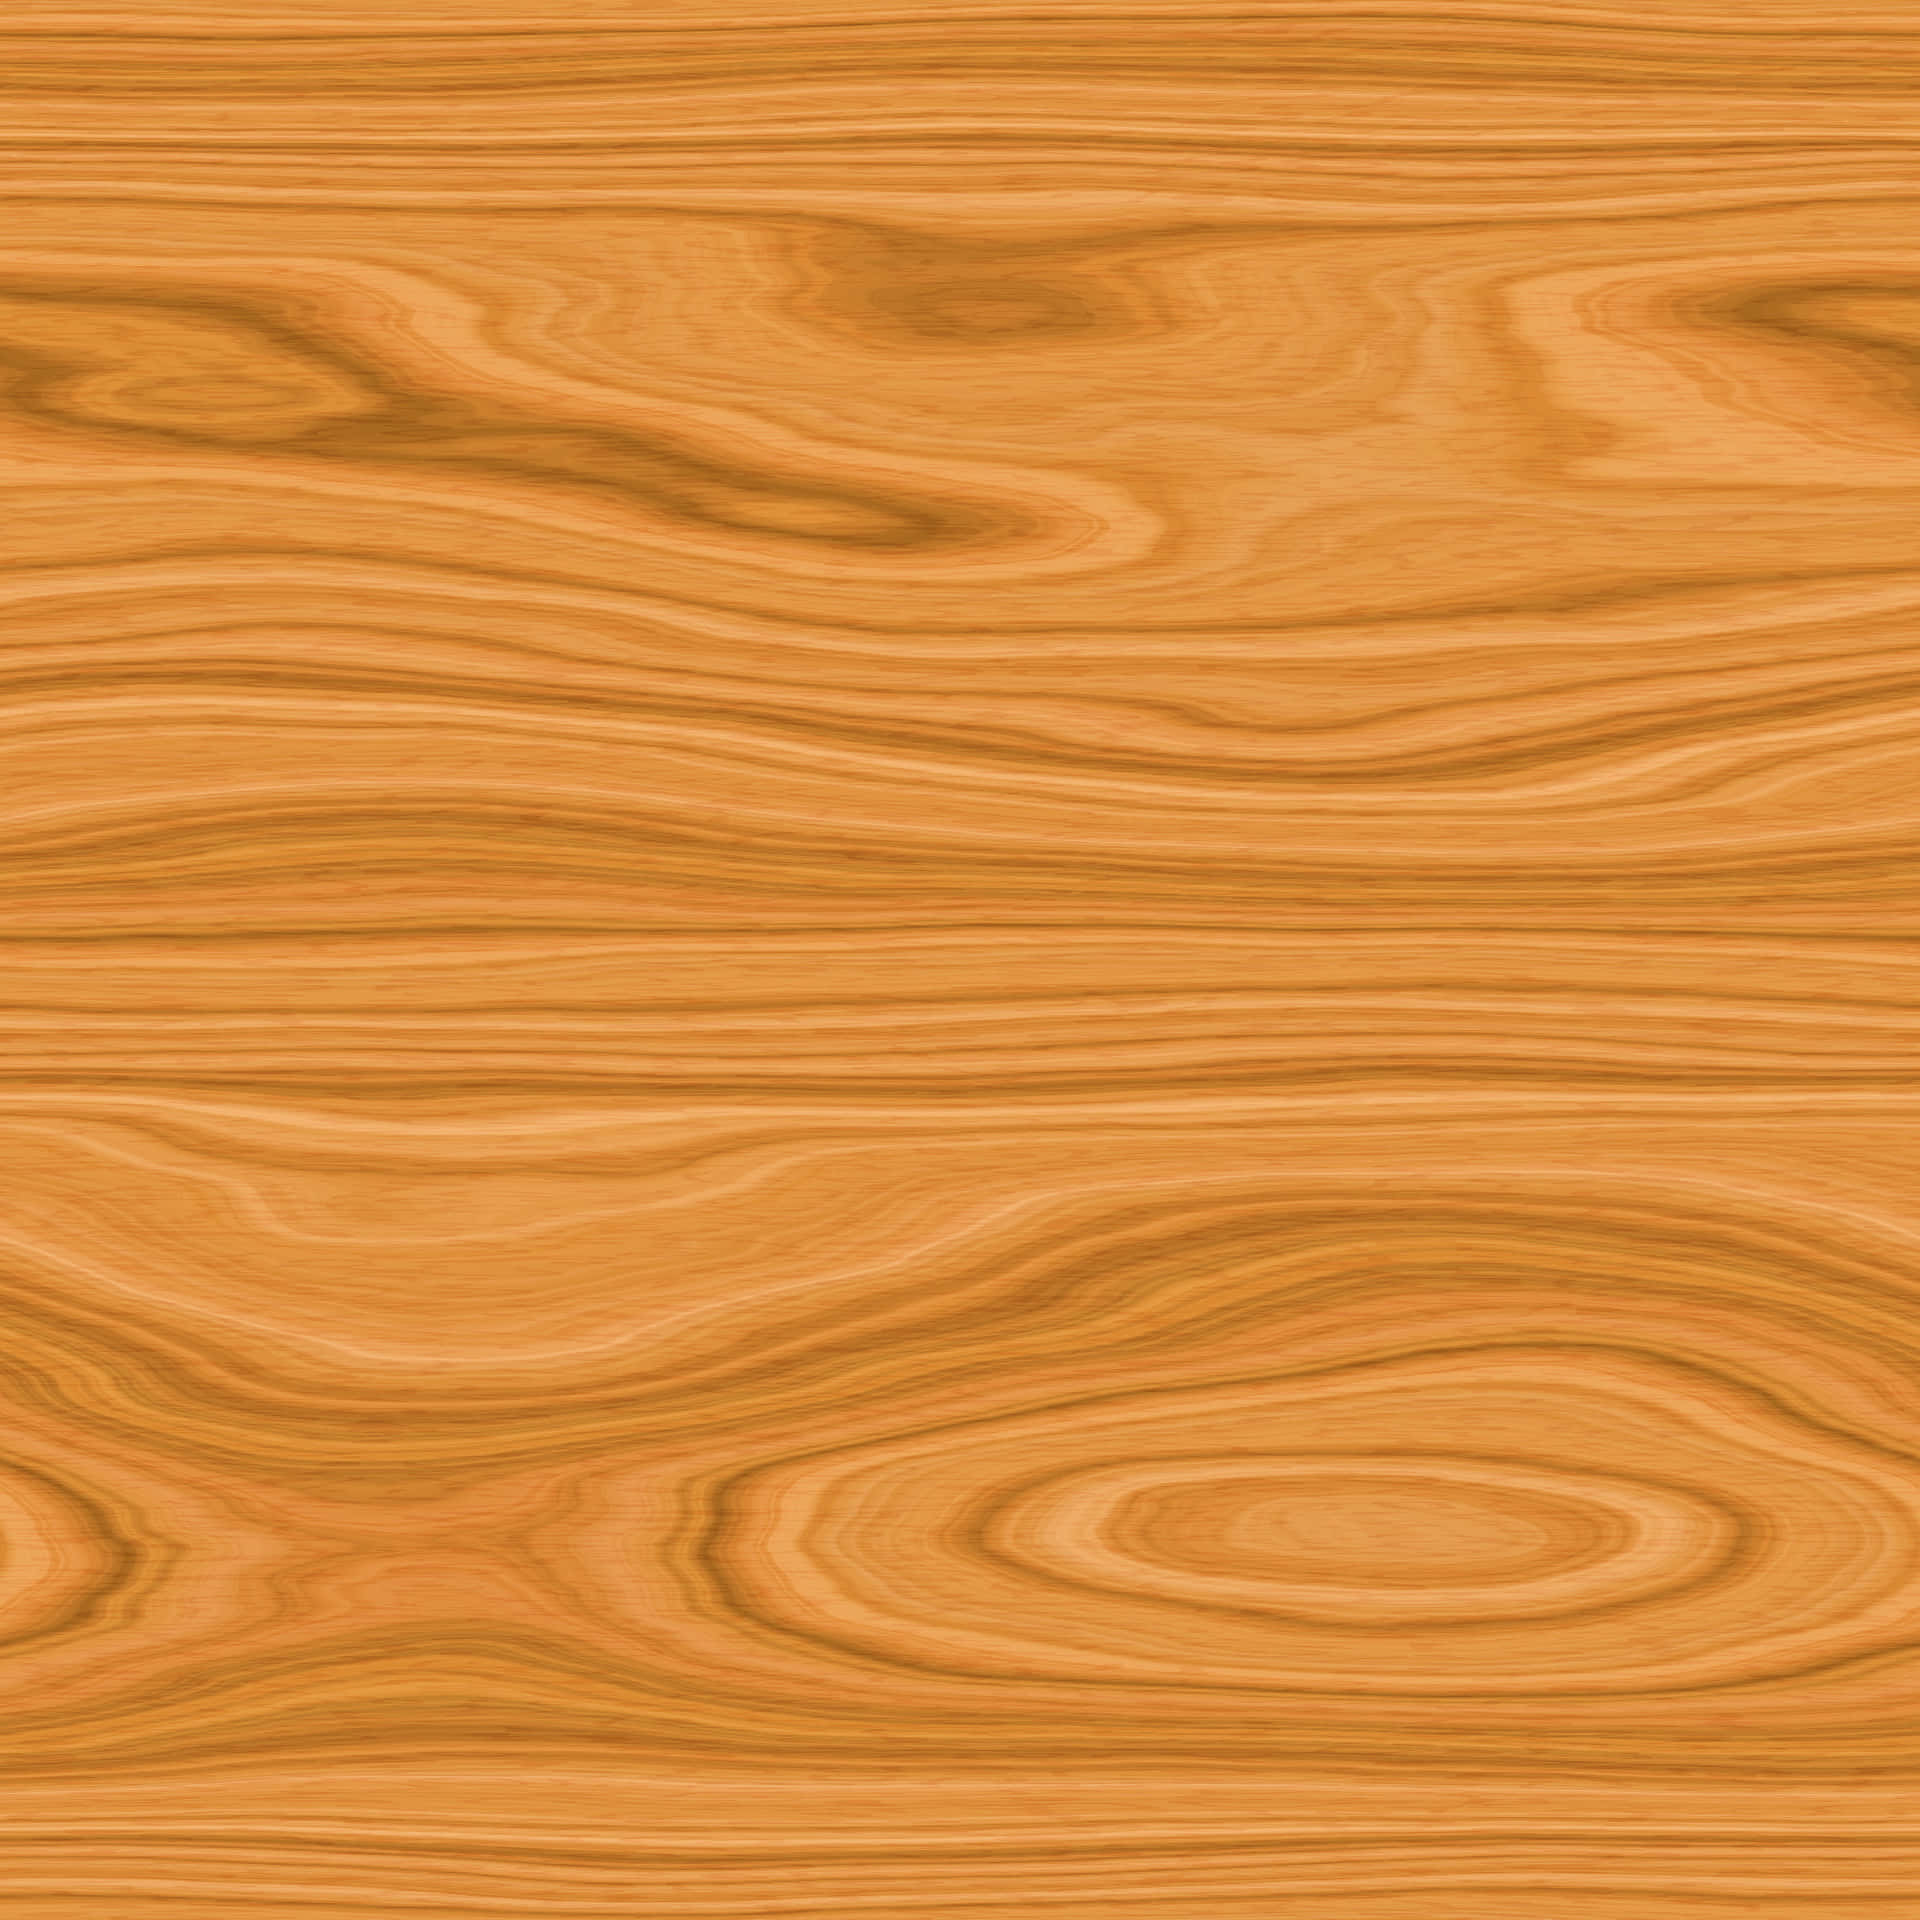 Massives,nachhaltiges Holz Für Ihre Bauprojekte